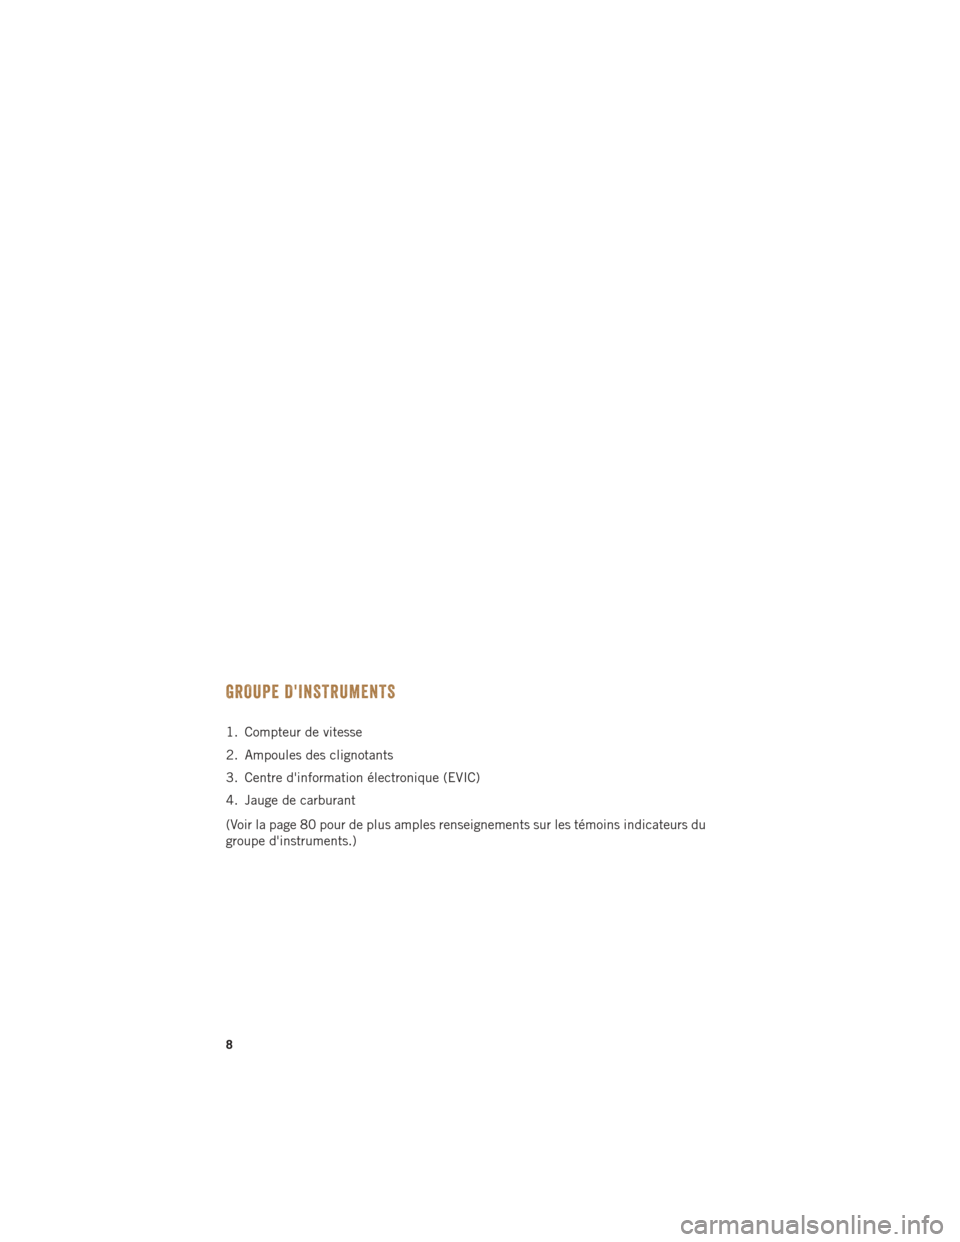 Ram ProMaster 2015  Guide dutilisateur (in French) GROUPE DINSTRUMENTS
1. Compteur de vitesse
2. Ampoules des clignotants
3. Centre dinformation électronique (EVIC)
4. Jauge de carburant
(Voir la page 80 pour de plus amples renseignements sur les t